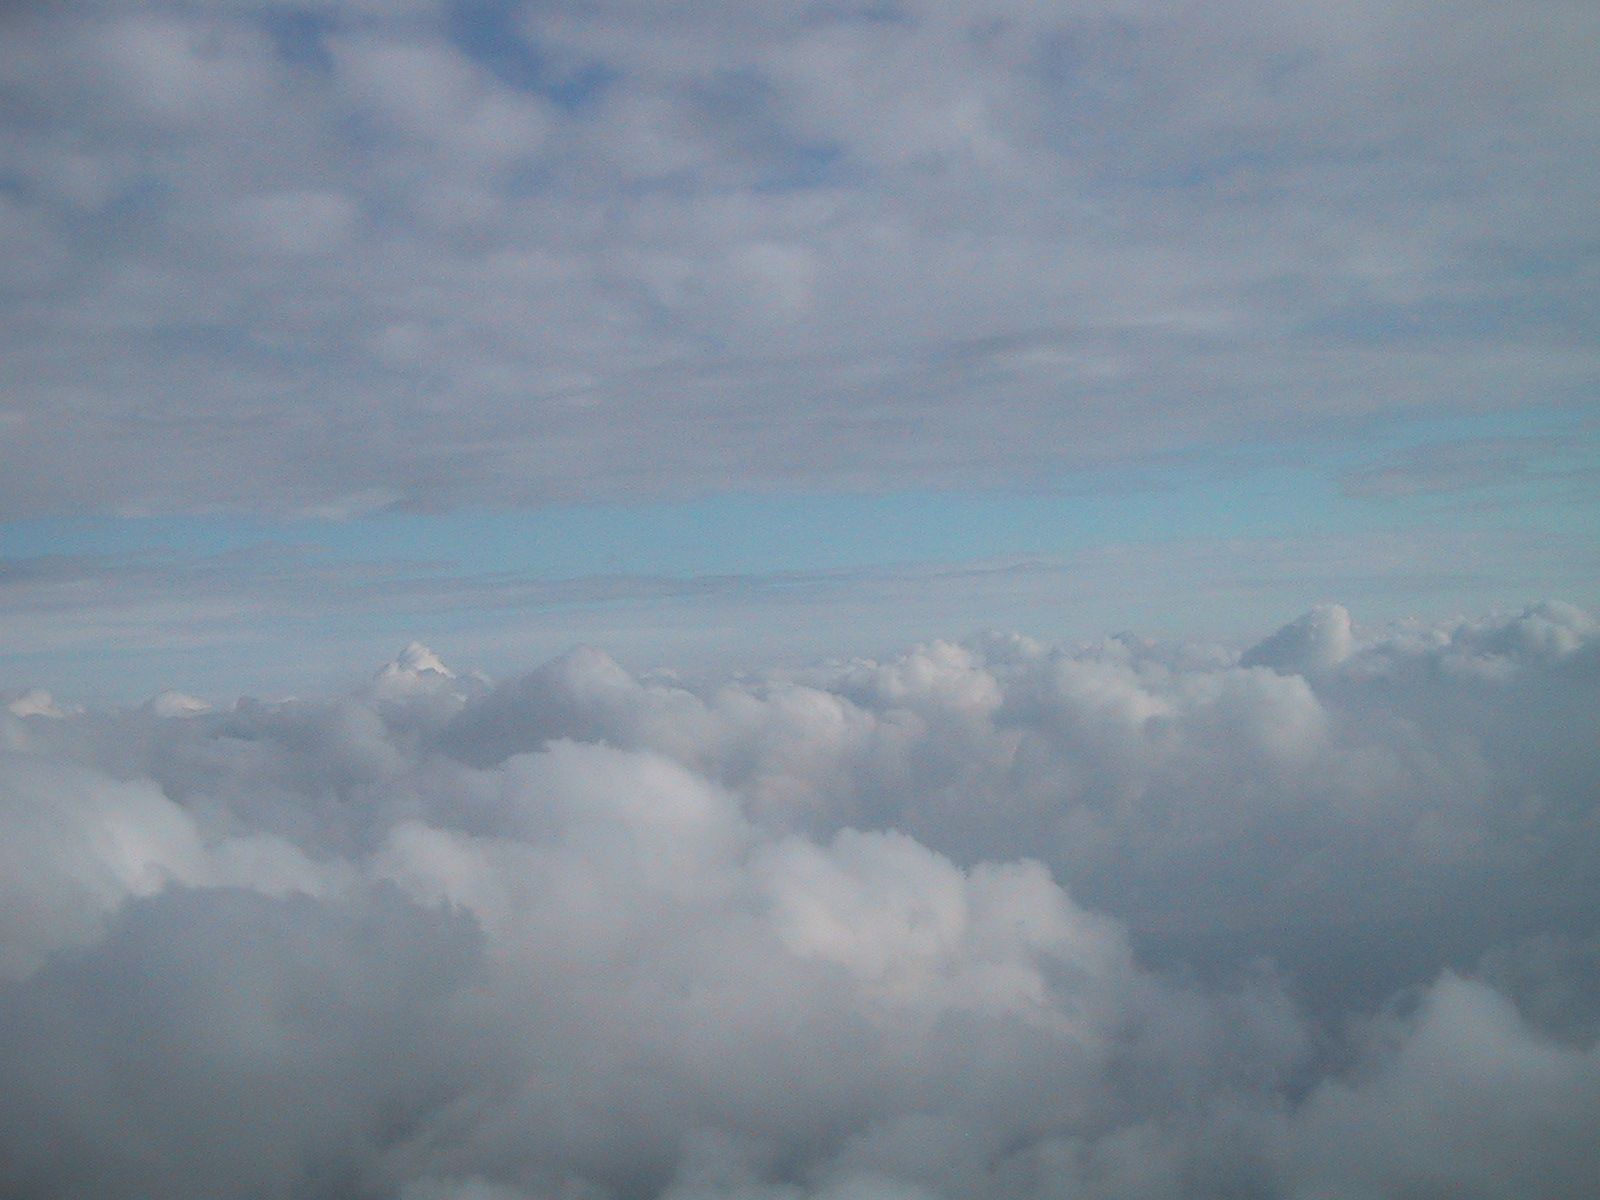 File:Clouds desktop wallpaper.jpg - Wikimedia Commons